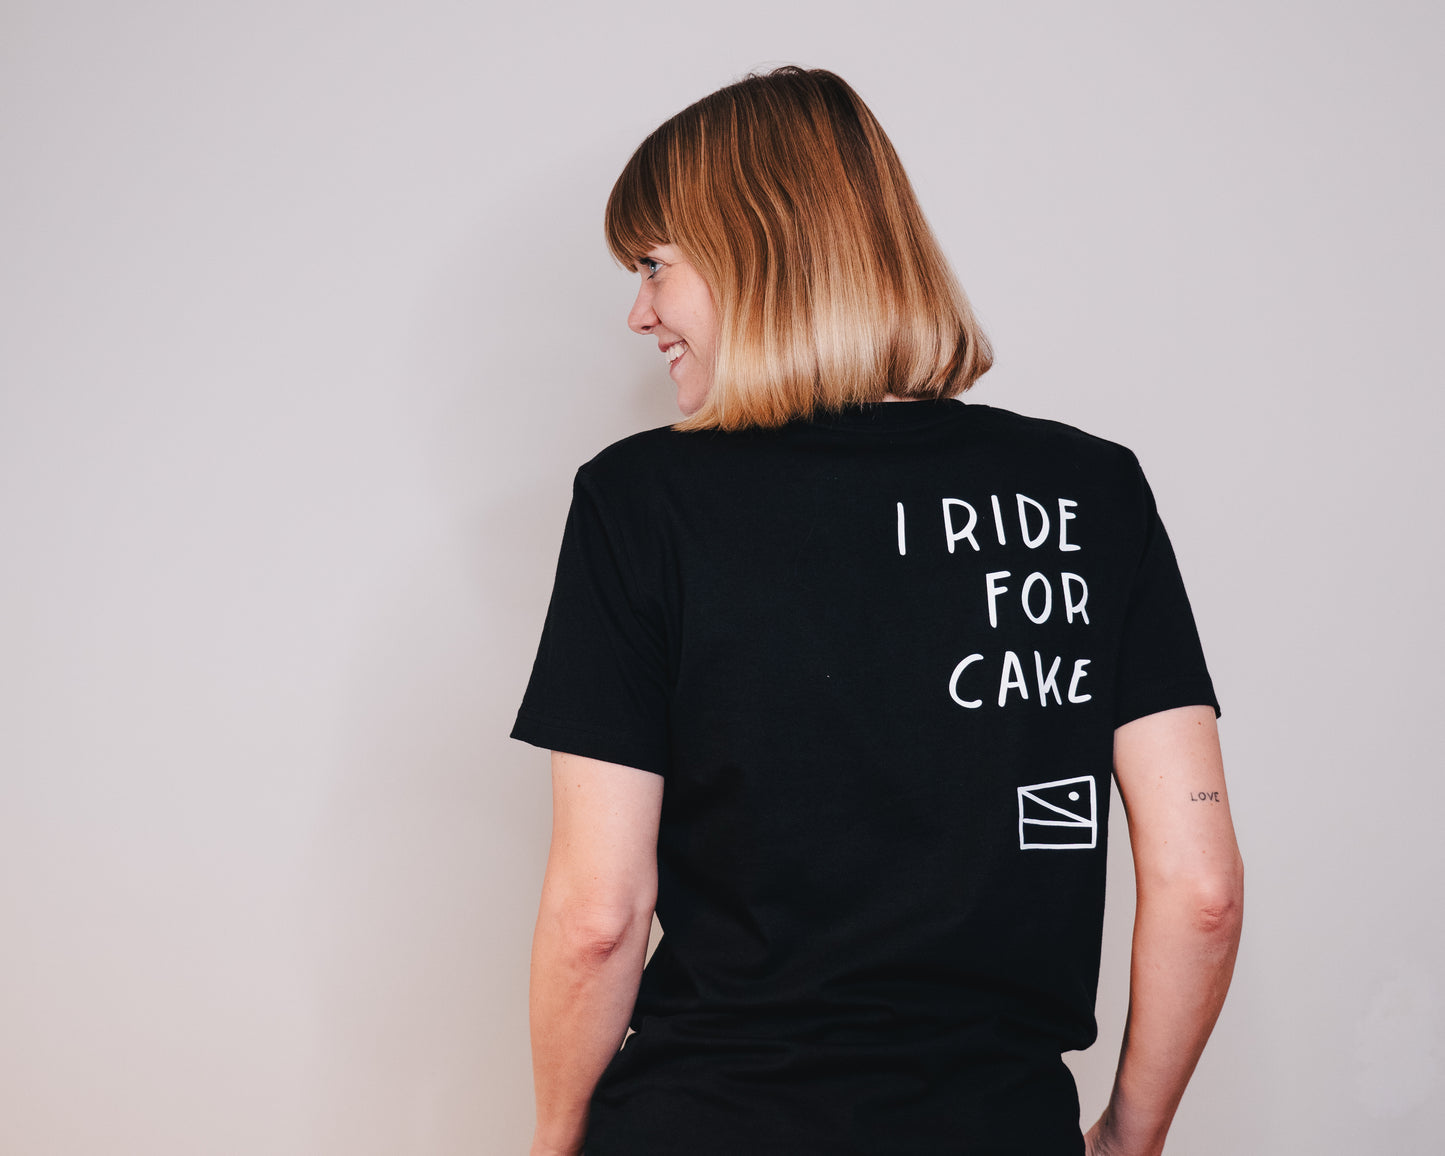 "I ride for cake" Unisex T-Shirt, Black Sesame